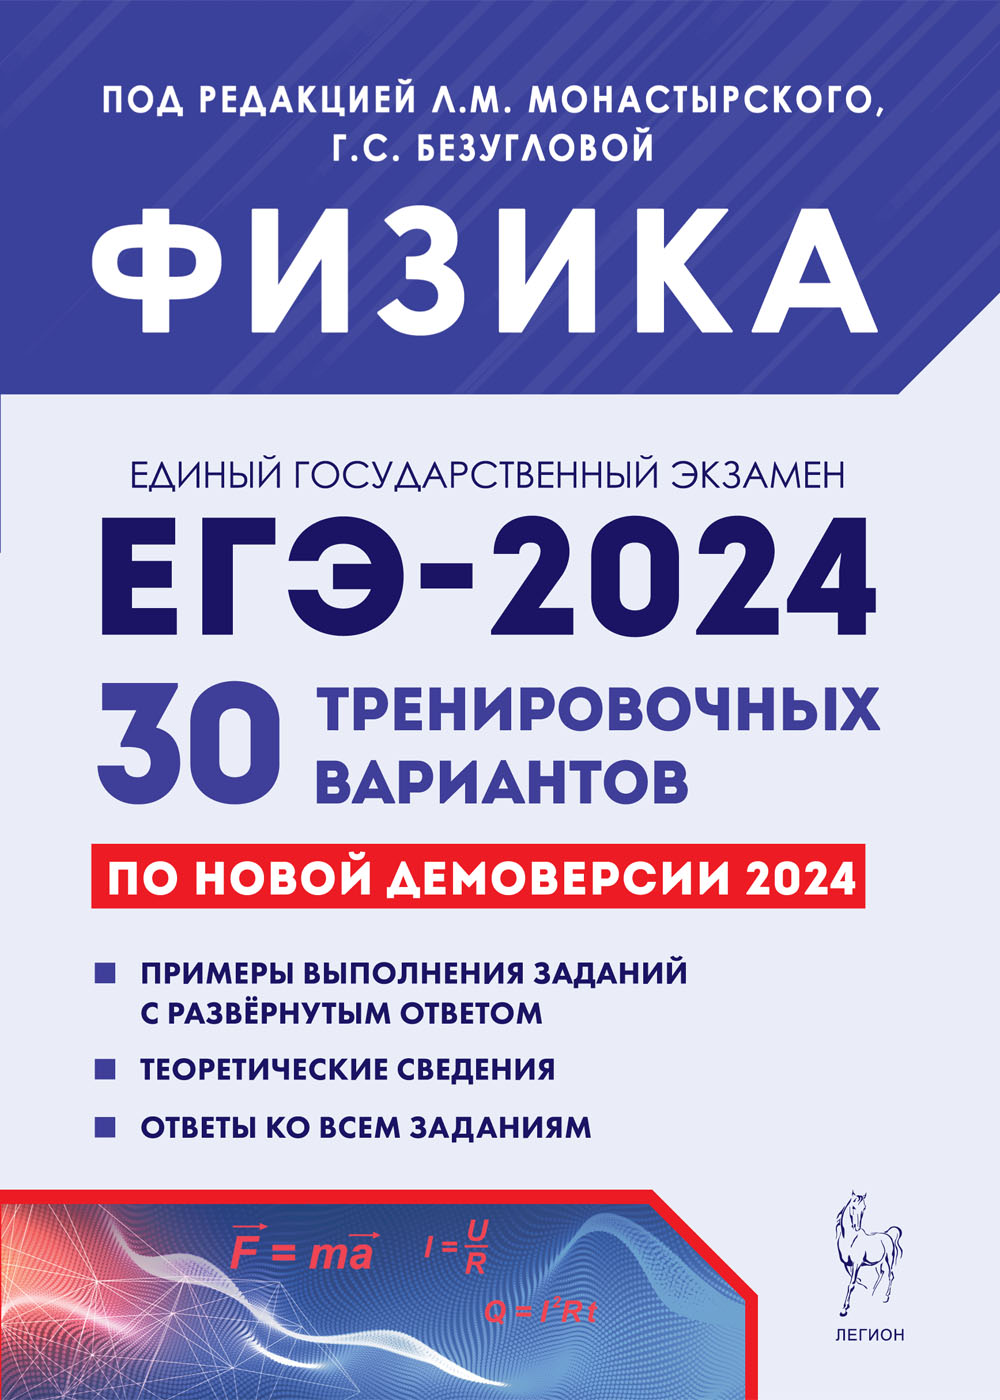 Физика. Подготовка к ЕГЭ-2024. 30 тренировочных вариантов по демоверсии 2024 года